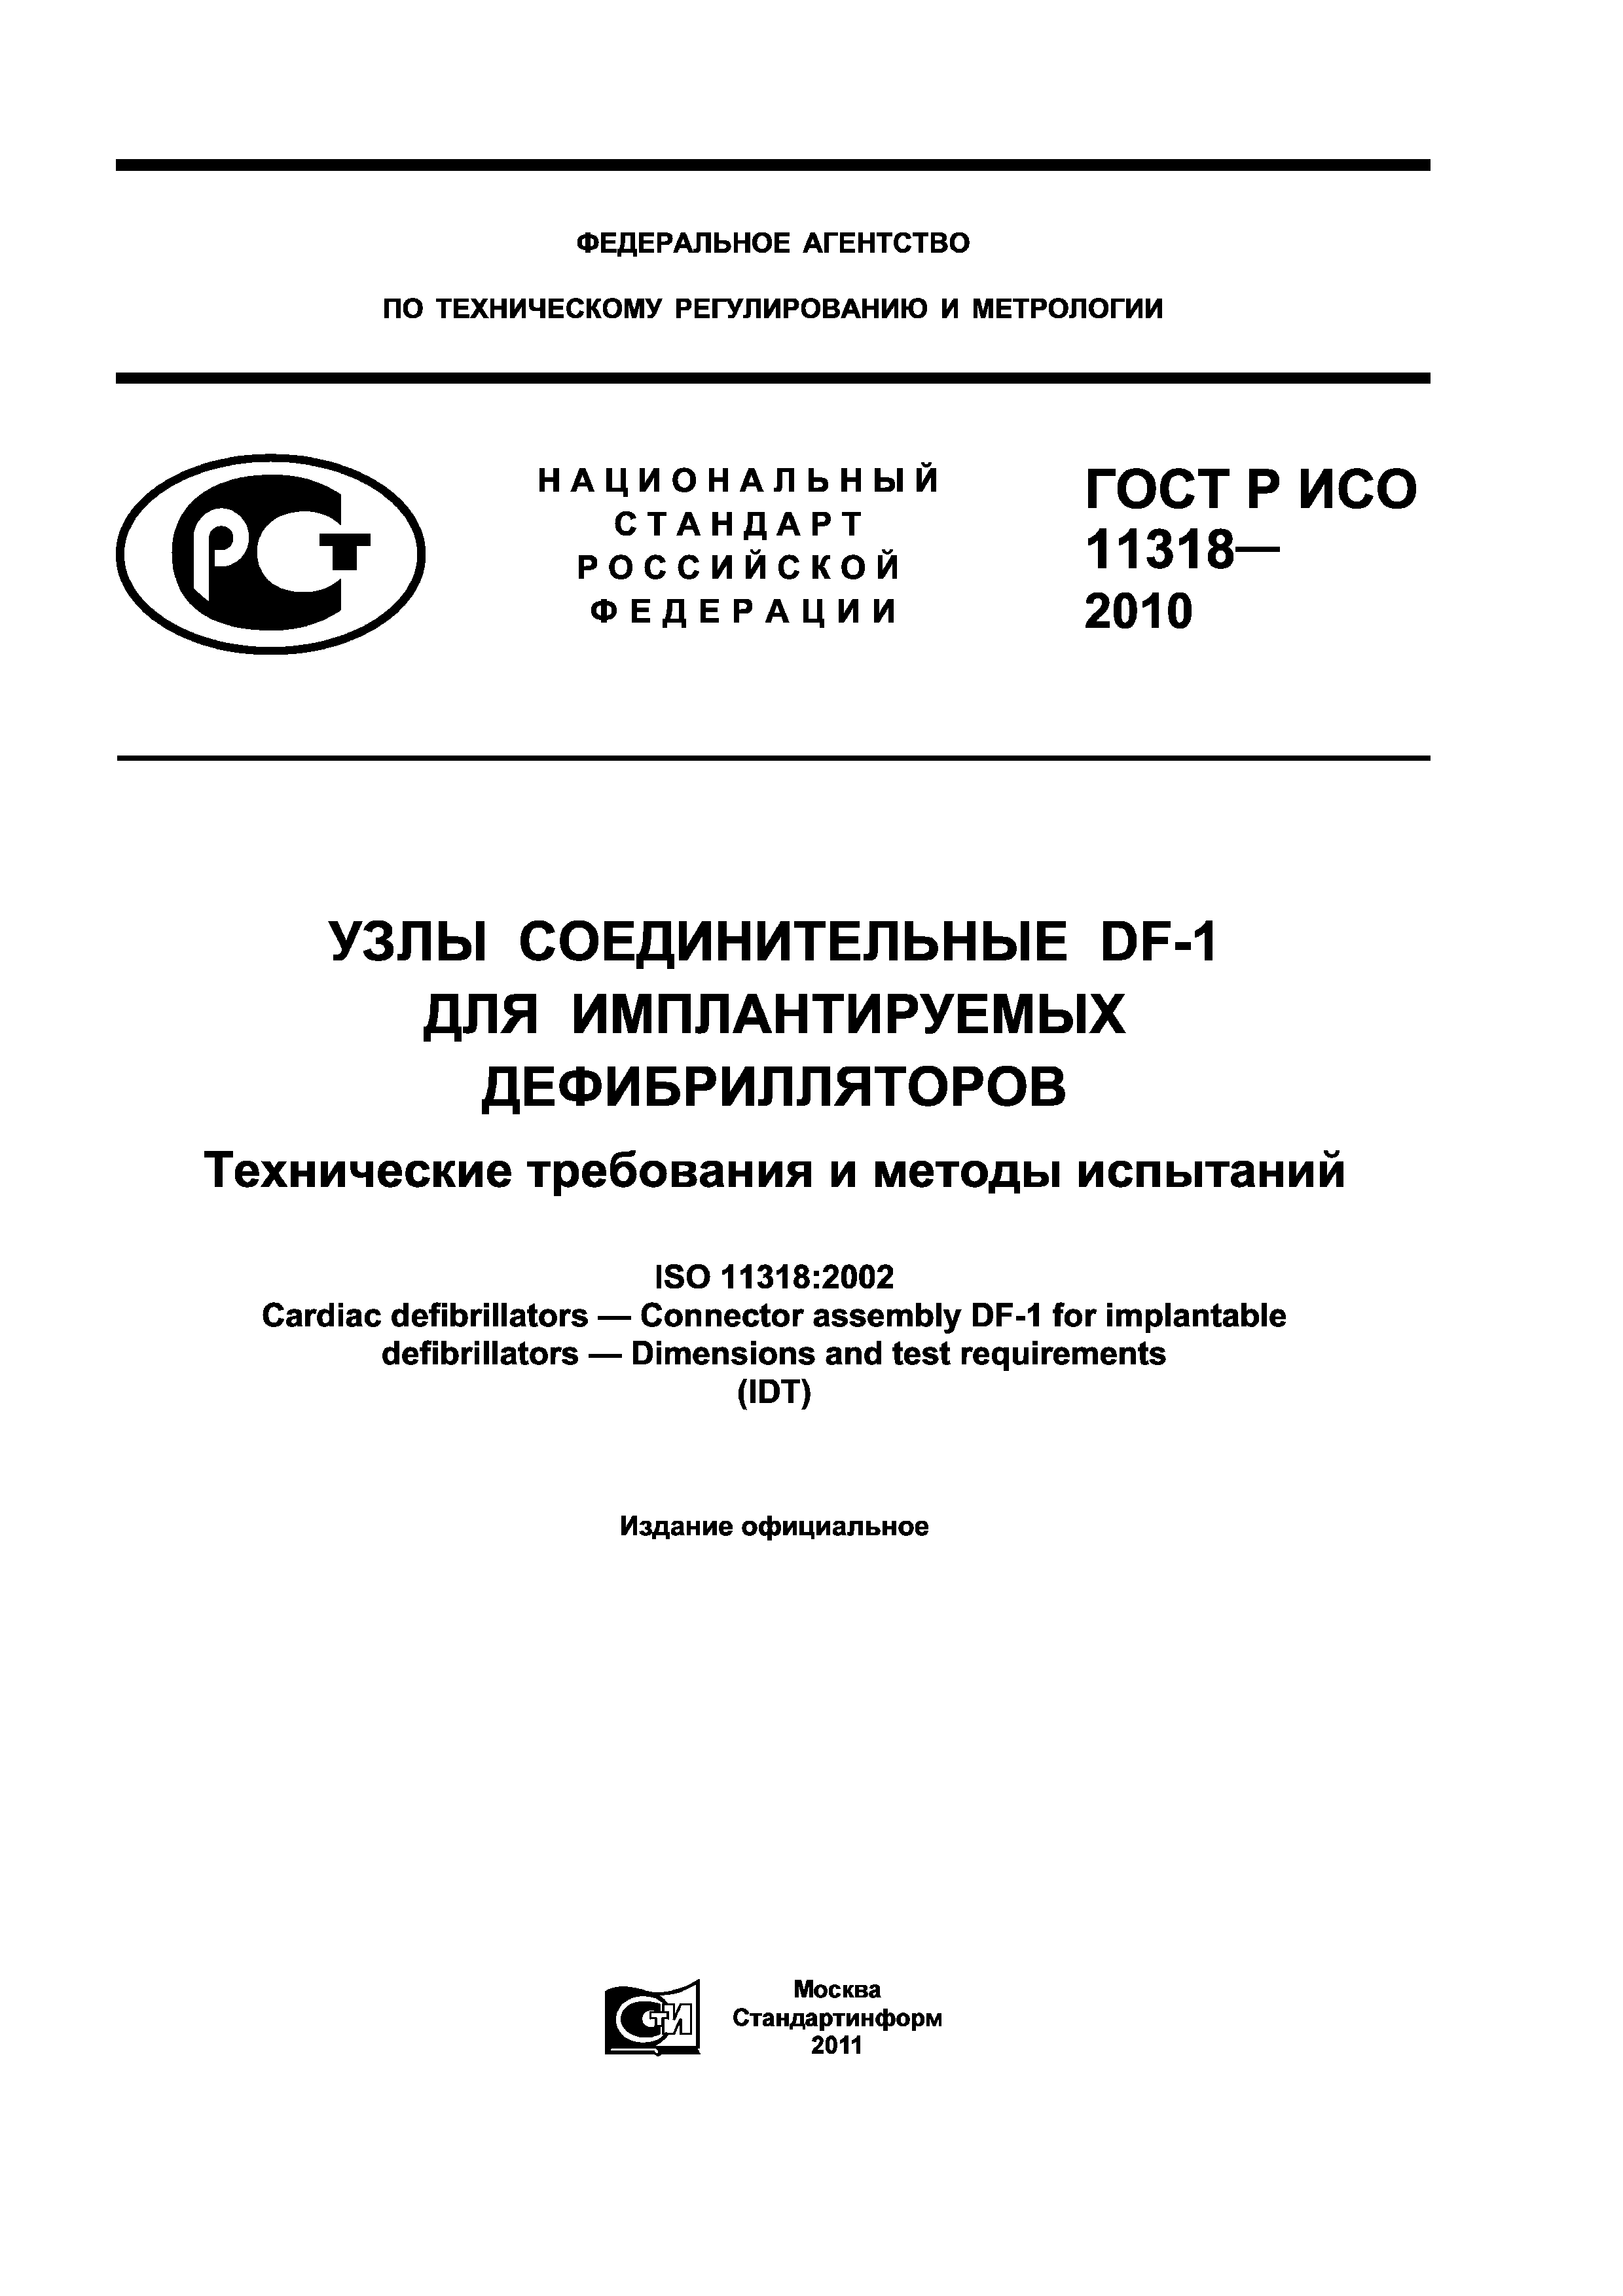 ГОСТ Р ИСО 11318-2010